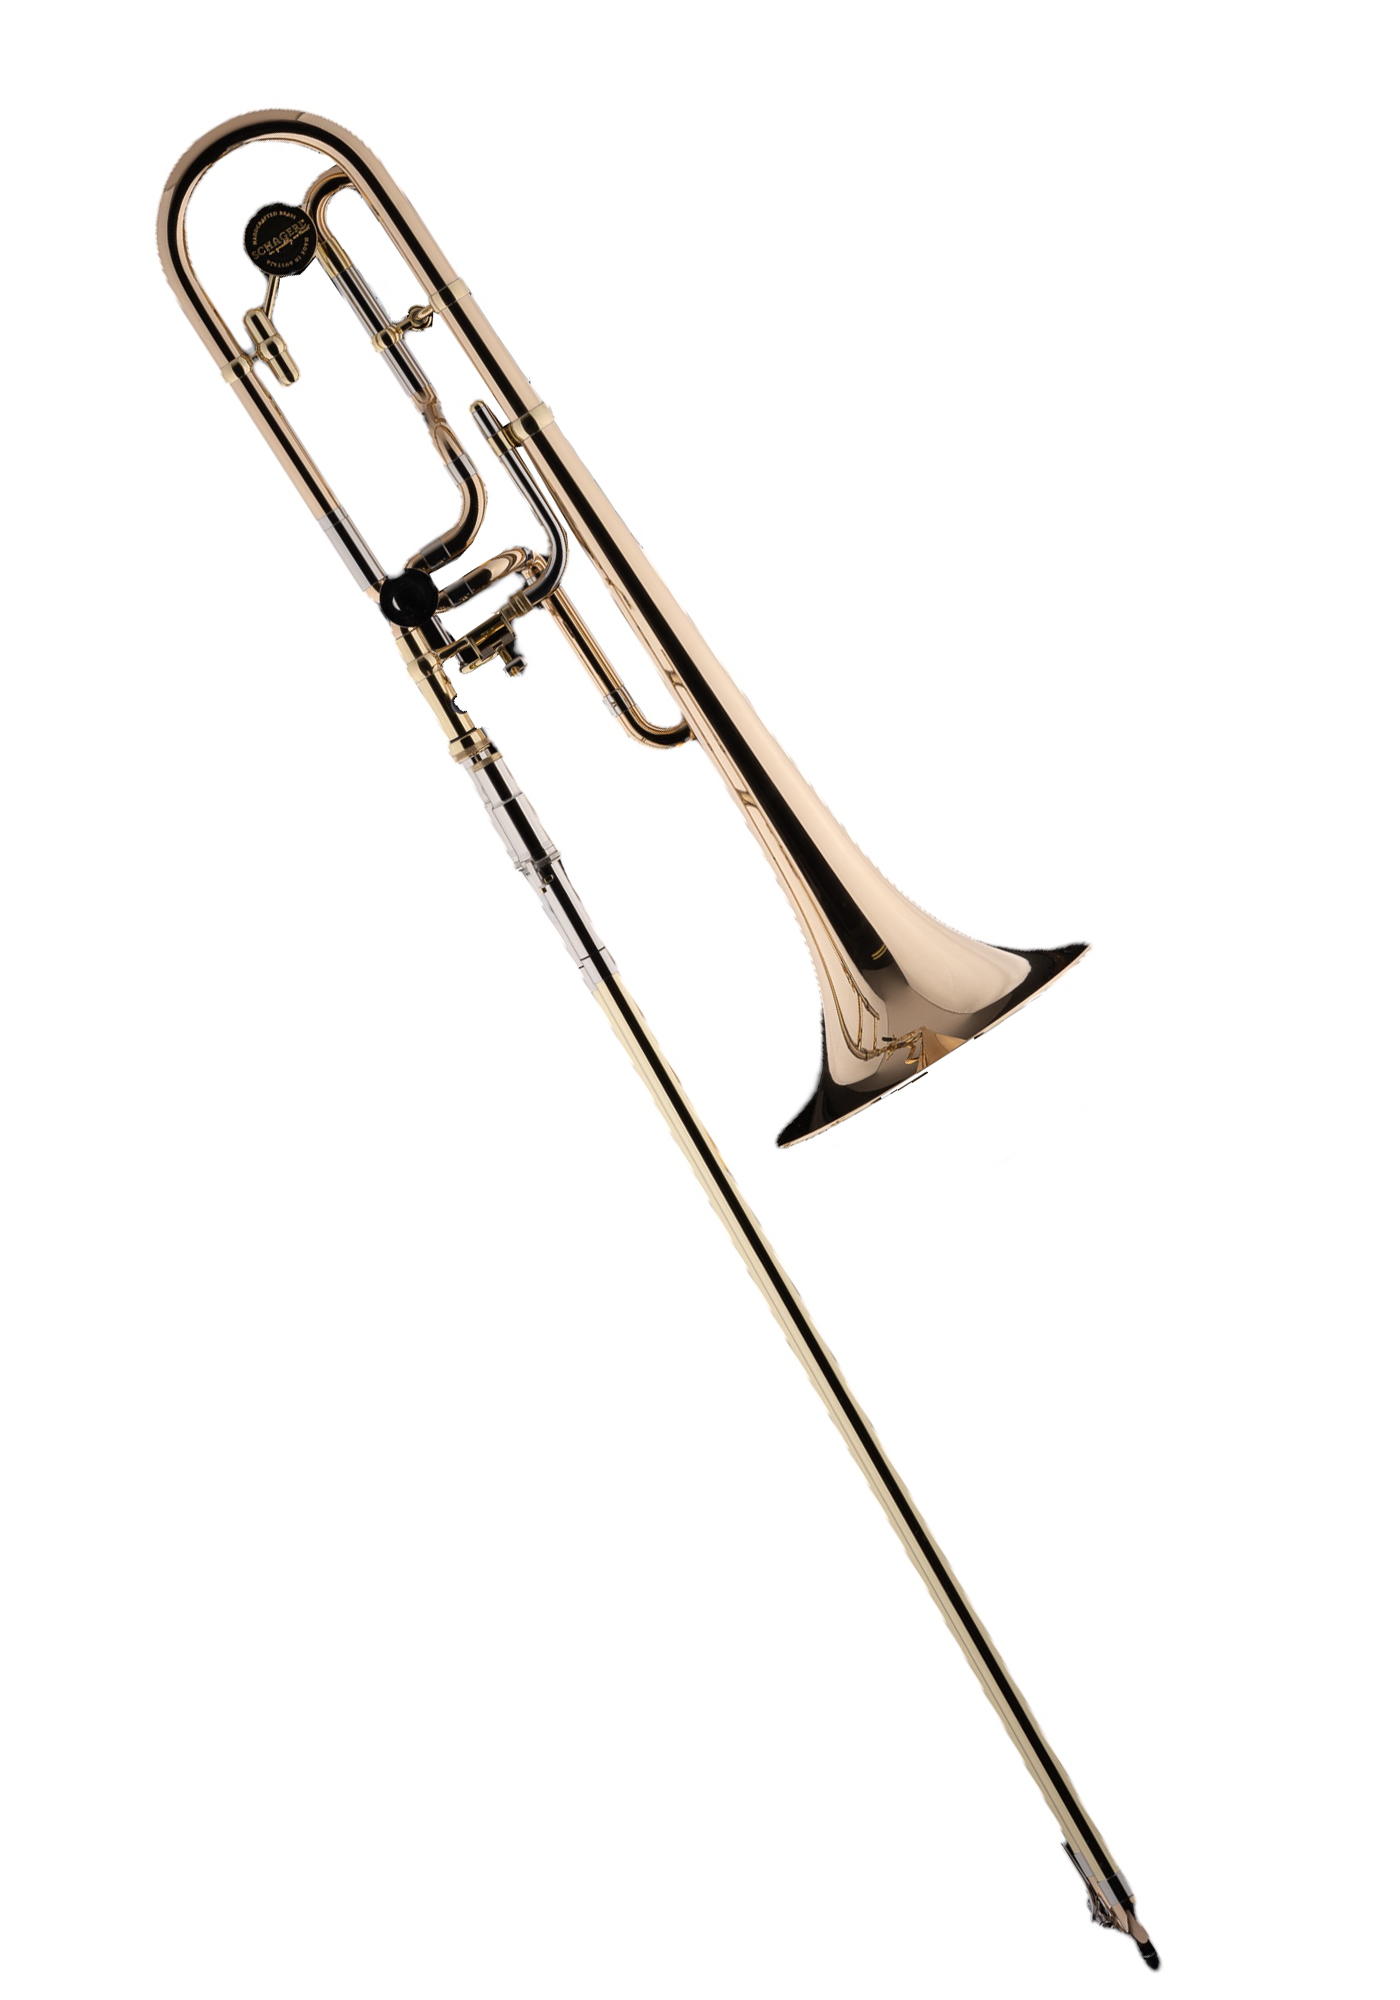 Schagerl Bb/F Trombone "AURORA Rizzotto" lacquered